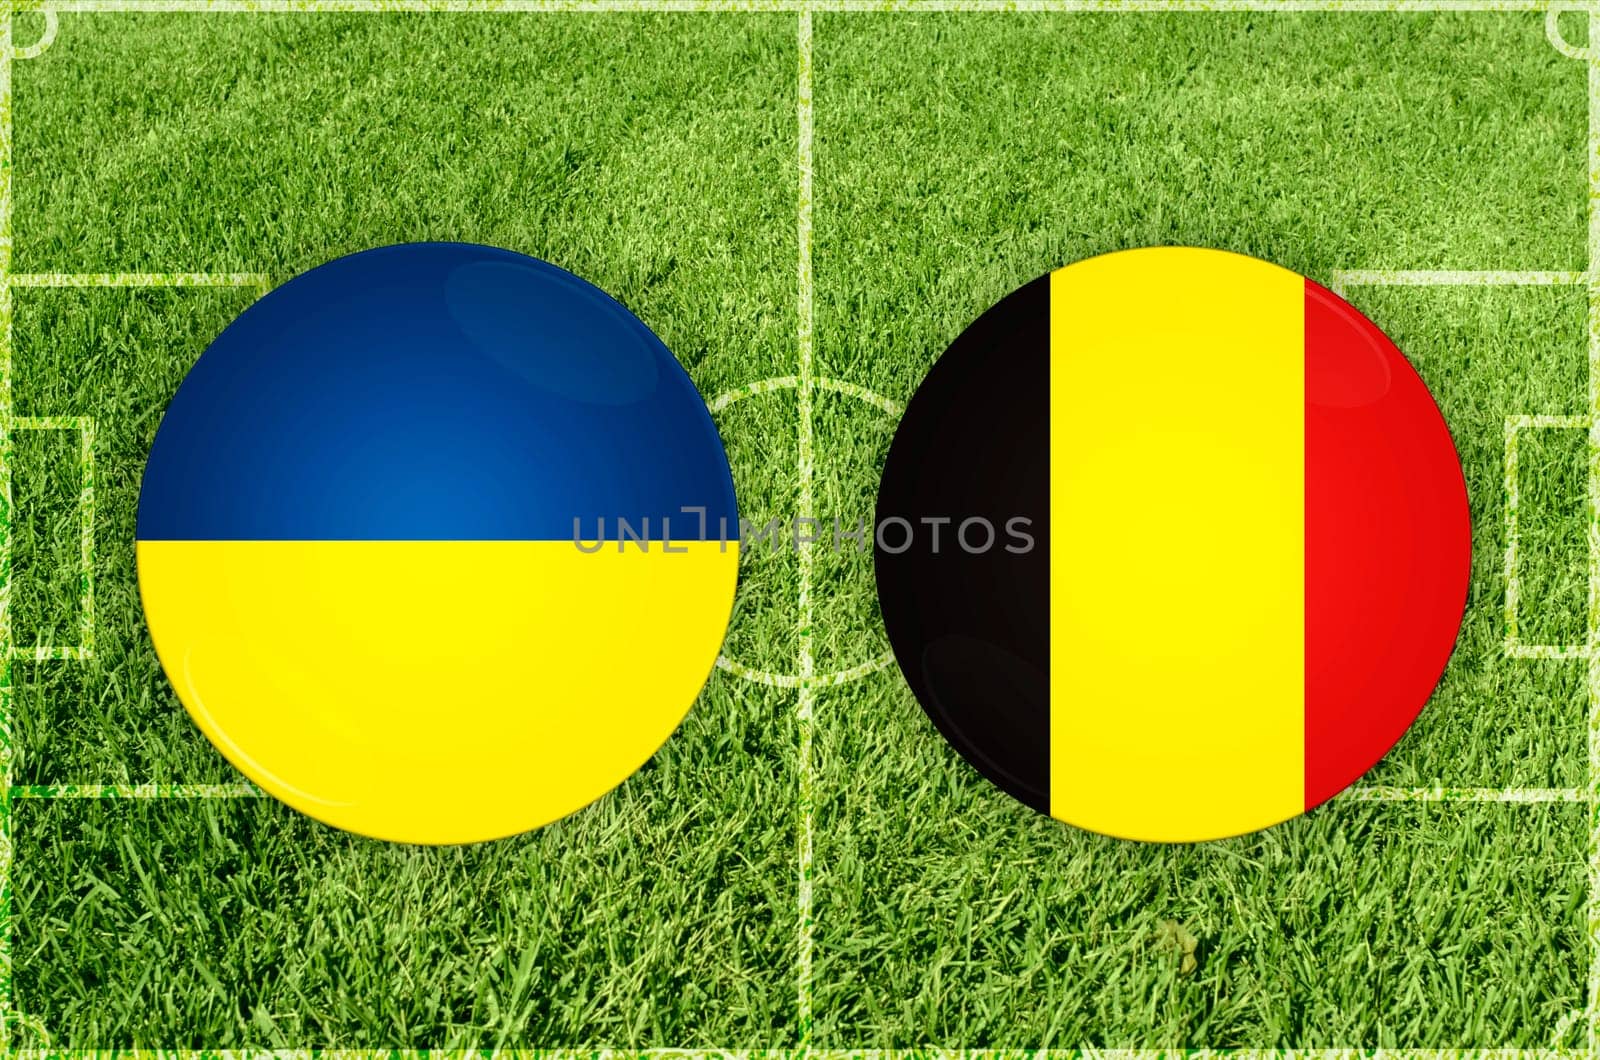 Ukraine vs Belgium football match by rusak